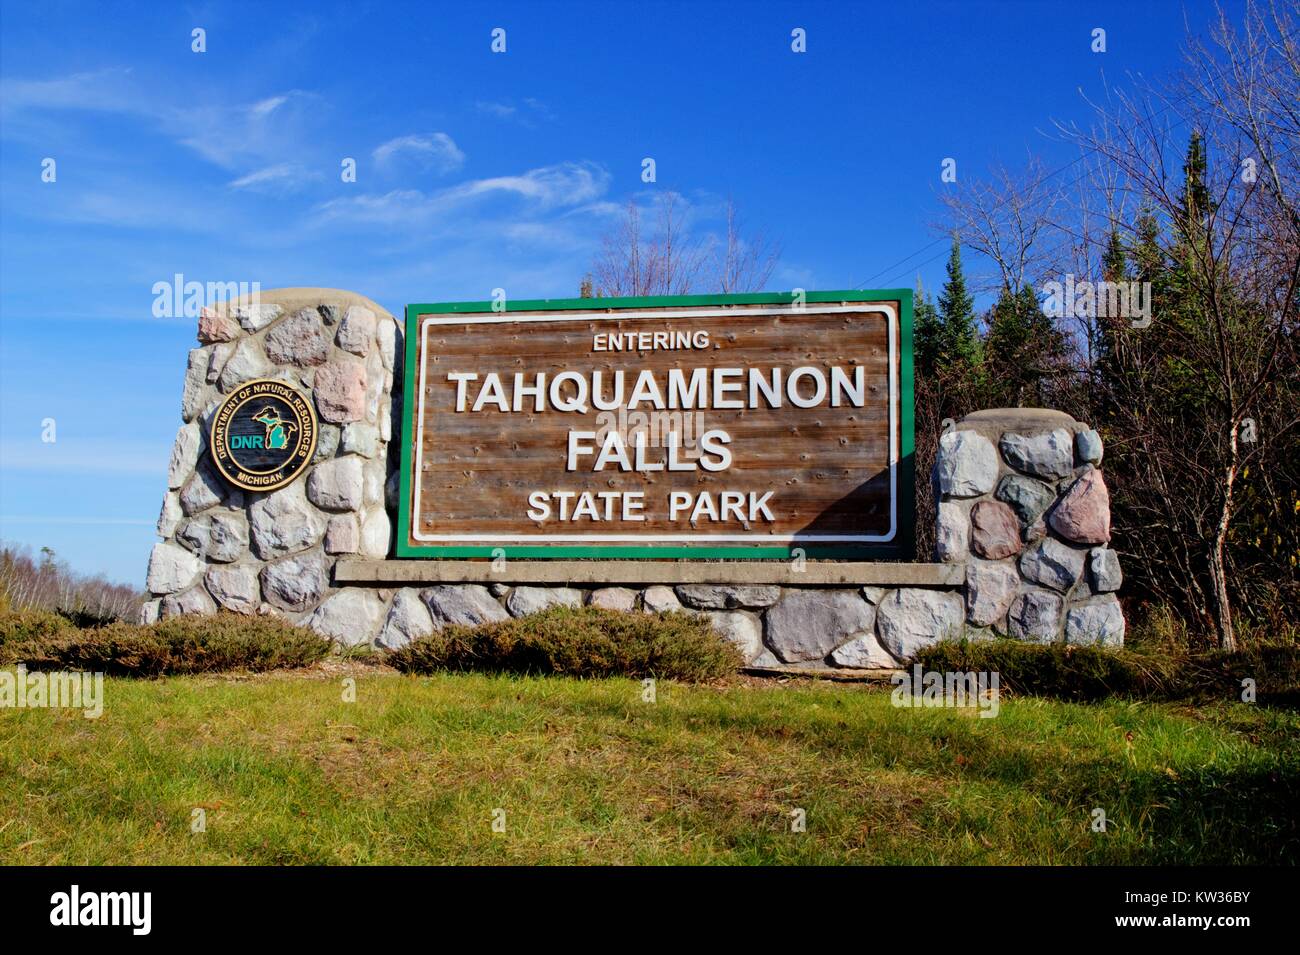 Tahquamenon Falls State Park. Panneau d'entrée à l'Tahquamenon Falls State Park. Dans plus de 52 000 acres, c'est la deuxième plus grande Michigan State Park. Banque D'Images